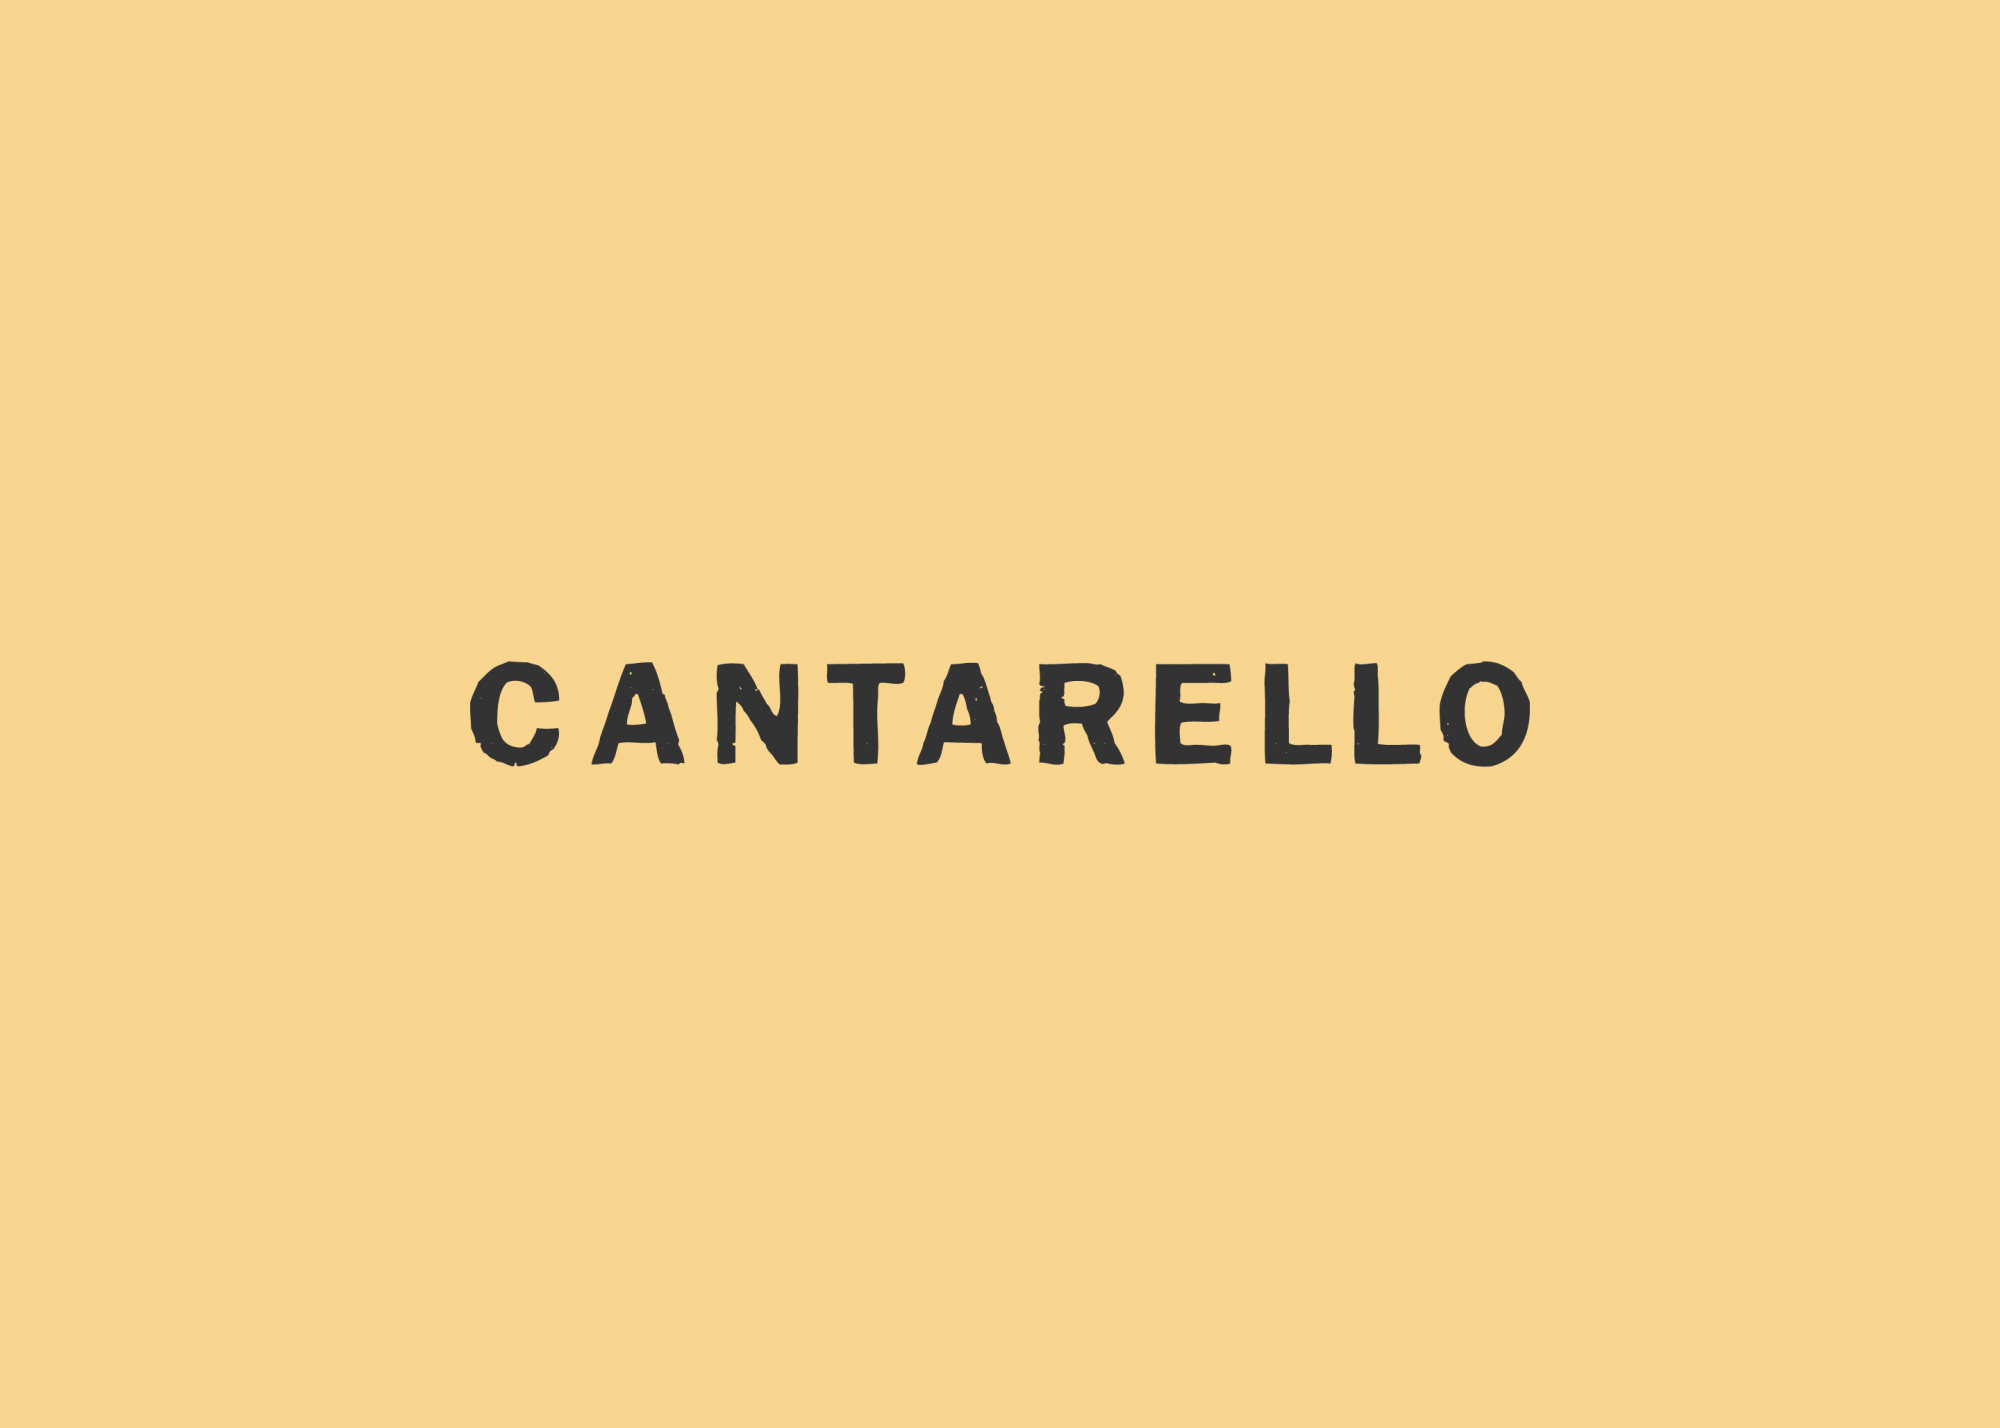 Cantarello logo design by Ryan Paonessa